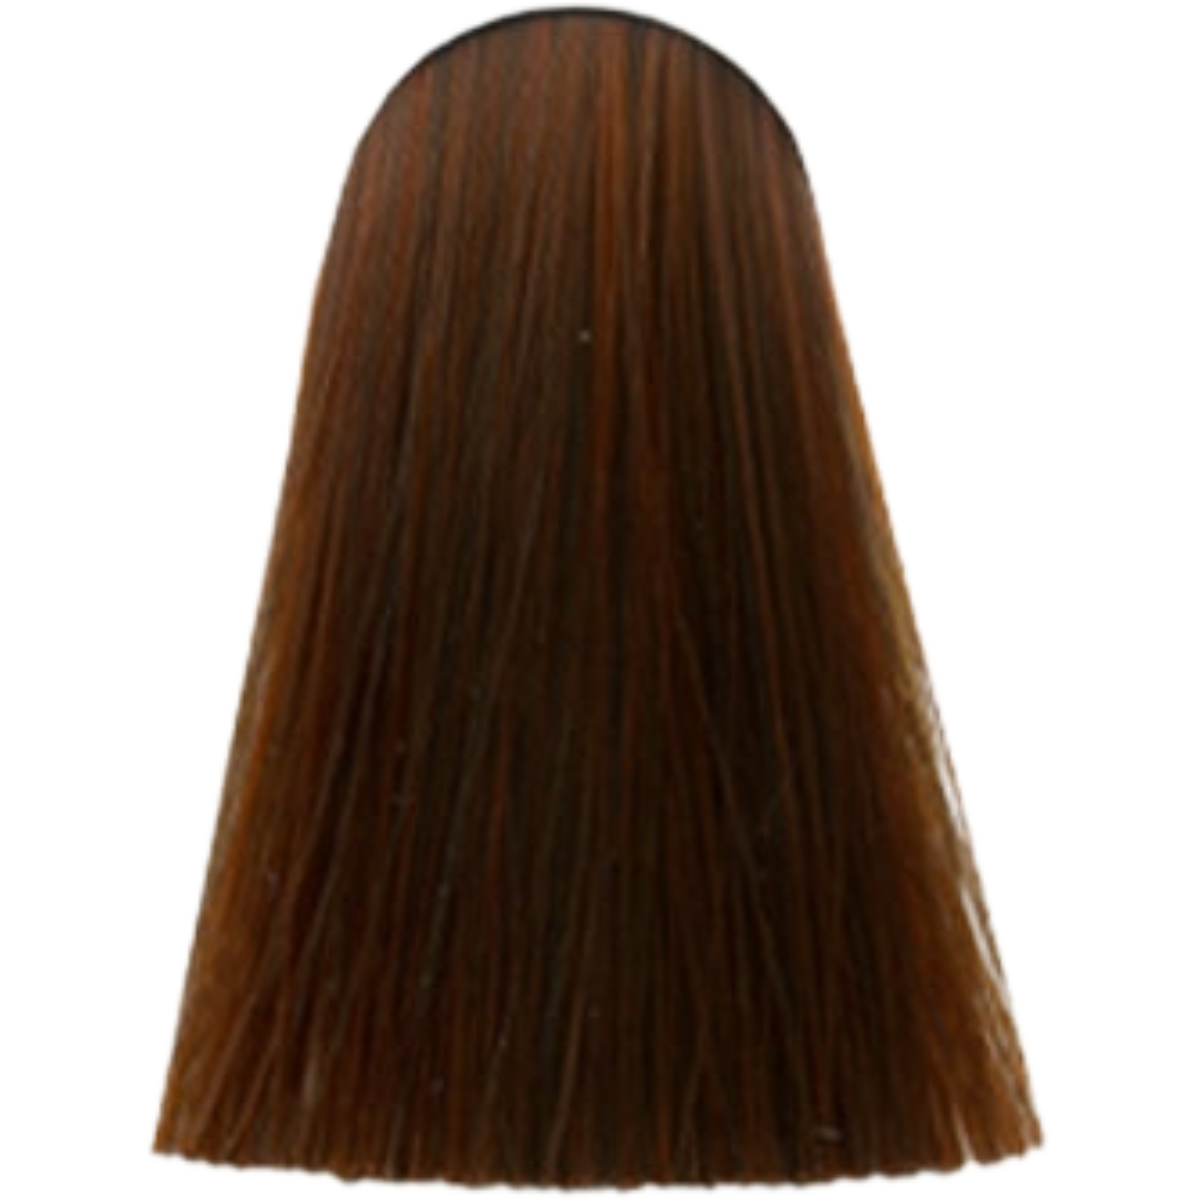 צבע לשיער 7.44 MEDIUM BLONDE INTENSIVE COPPER אינדולה INDOLA צבע לשיער 60 גרם